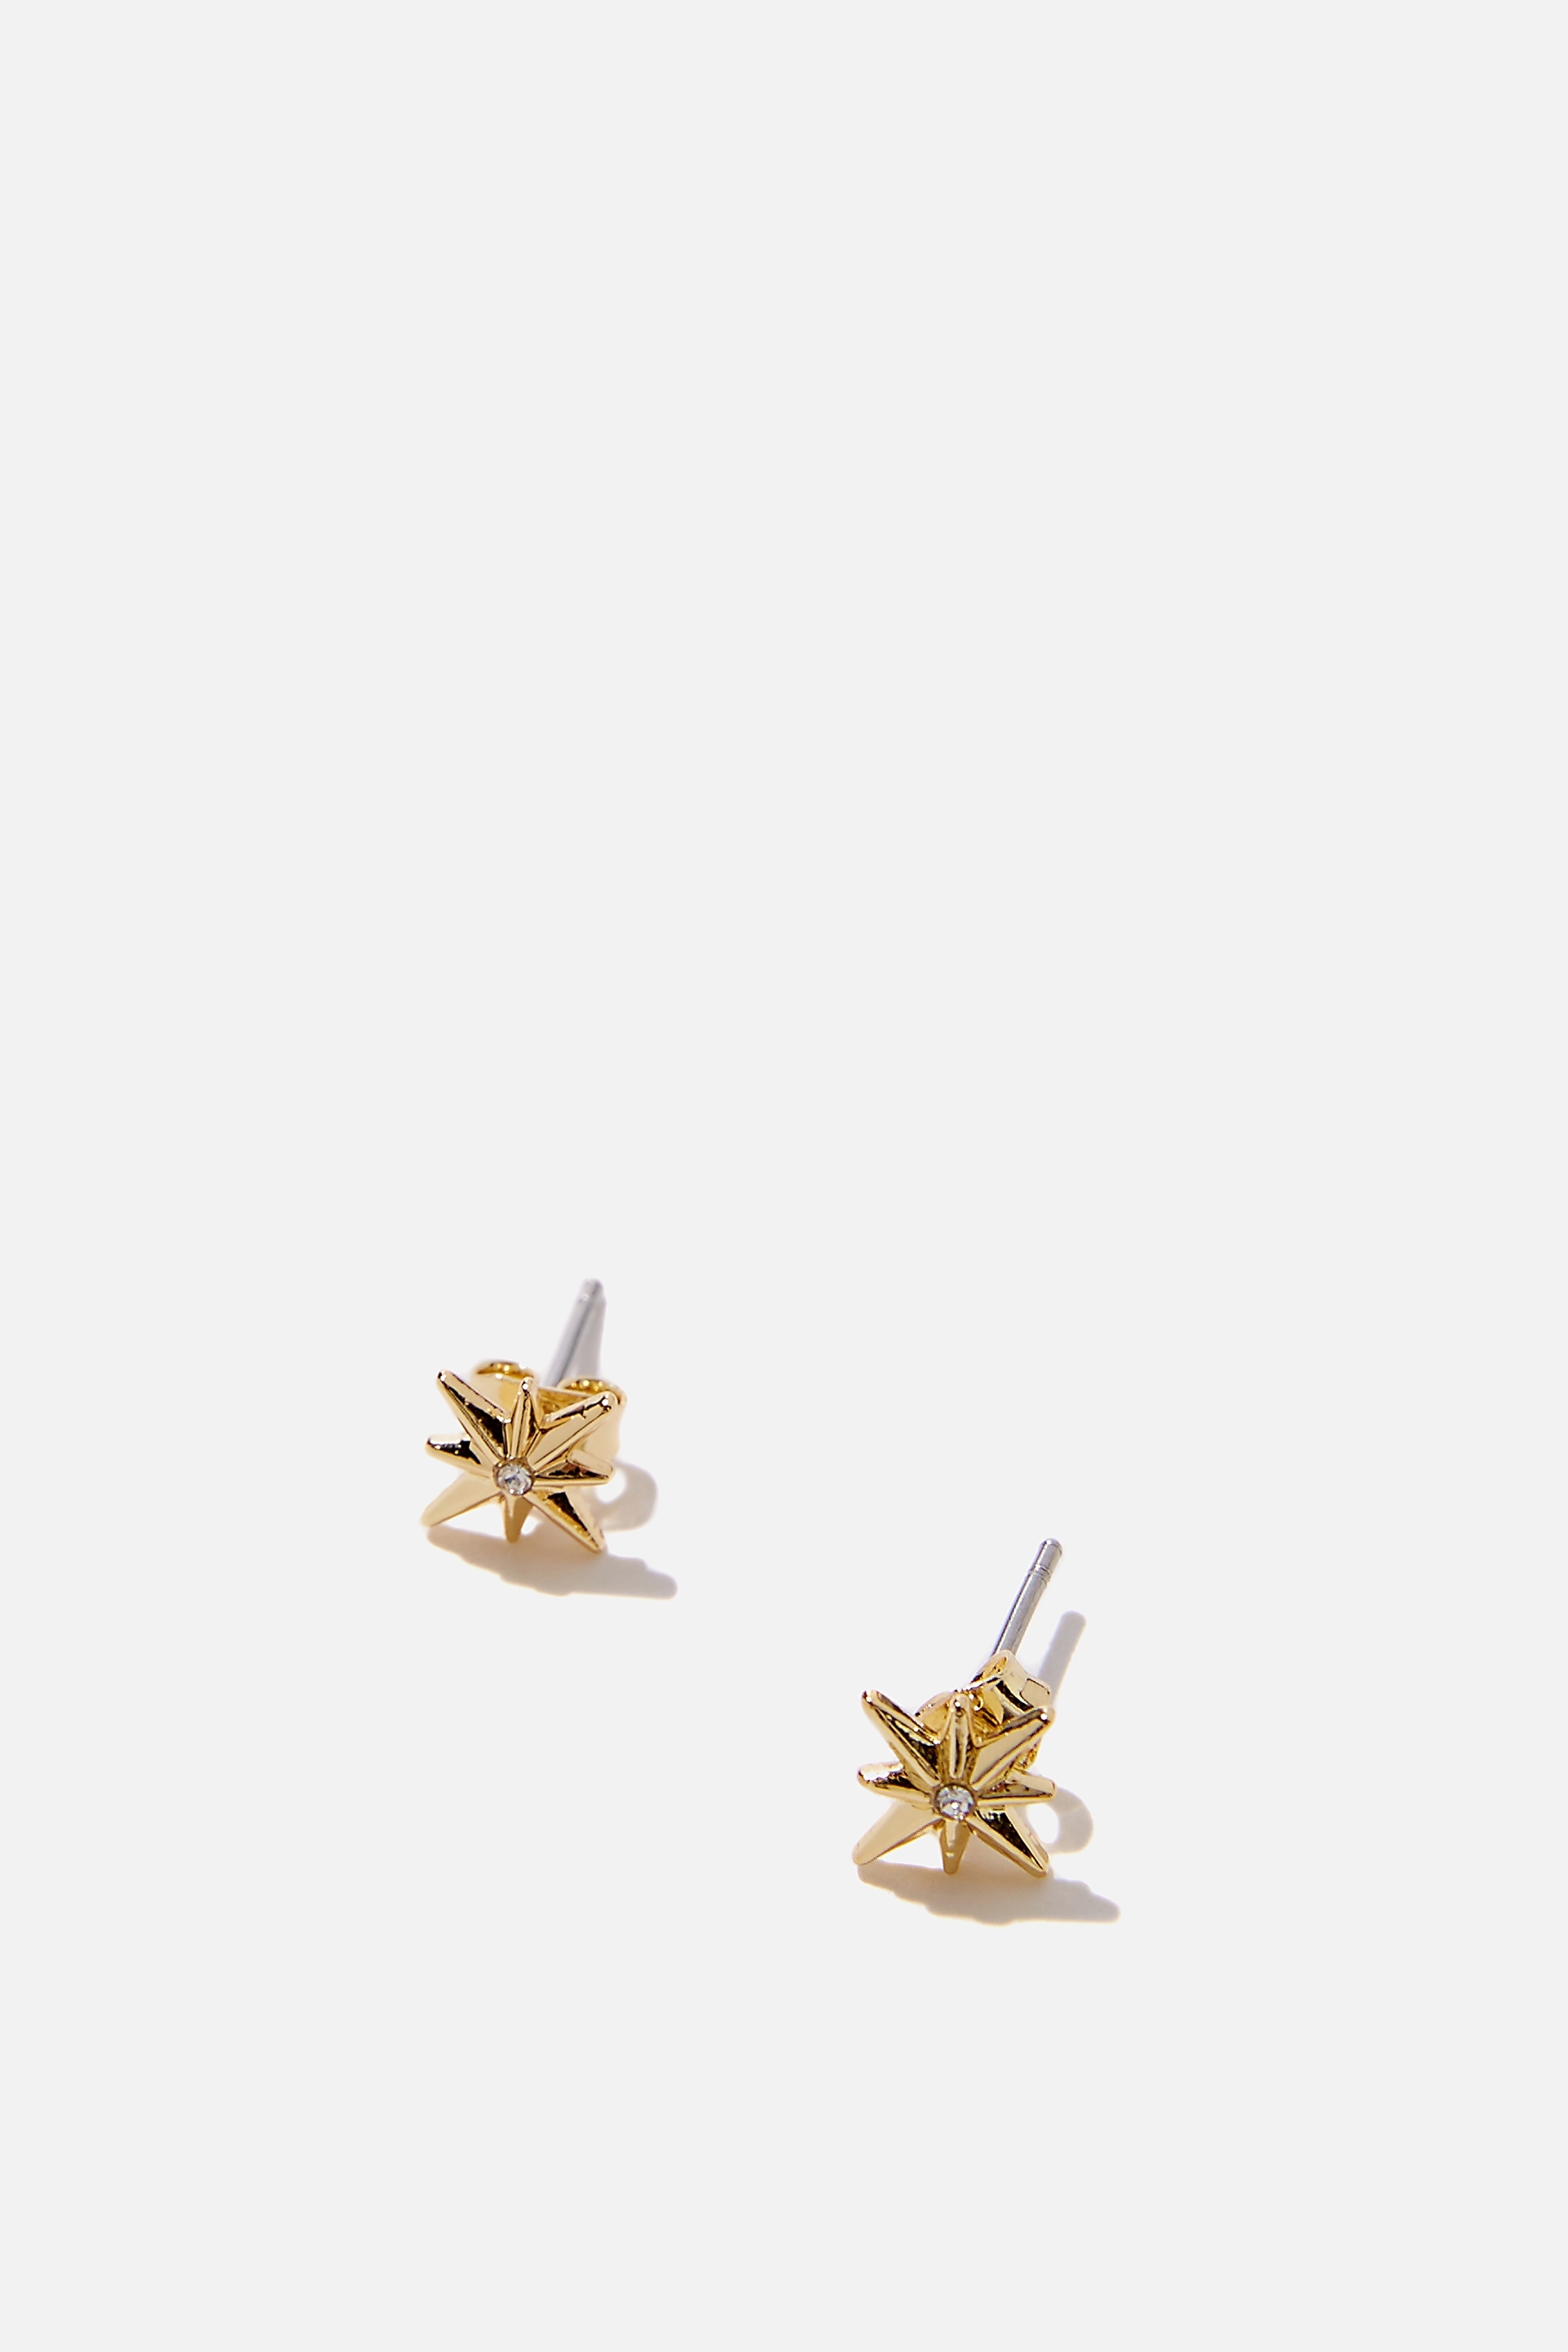 Rubi - Premium Stud Earrings - Gold plated celestial star